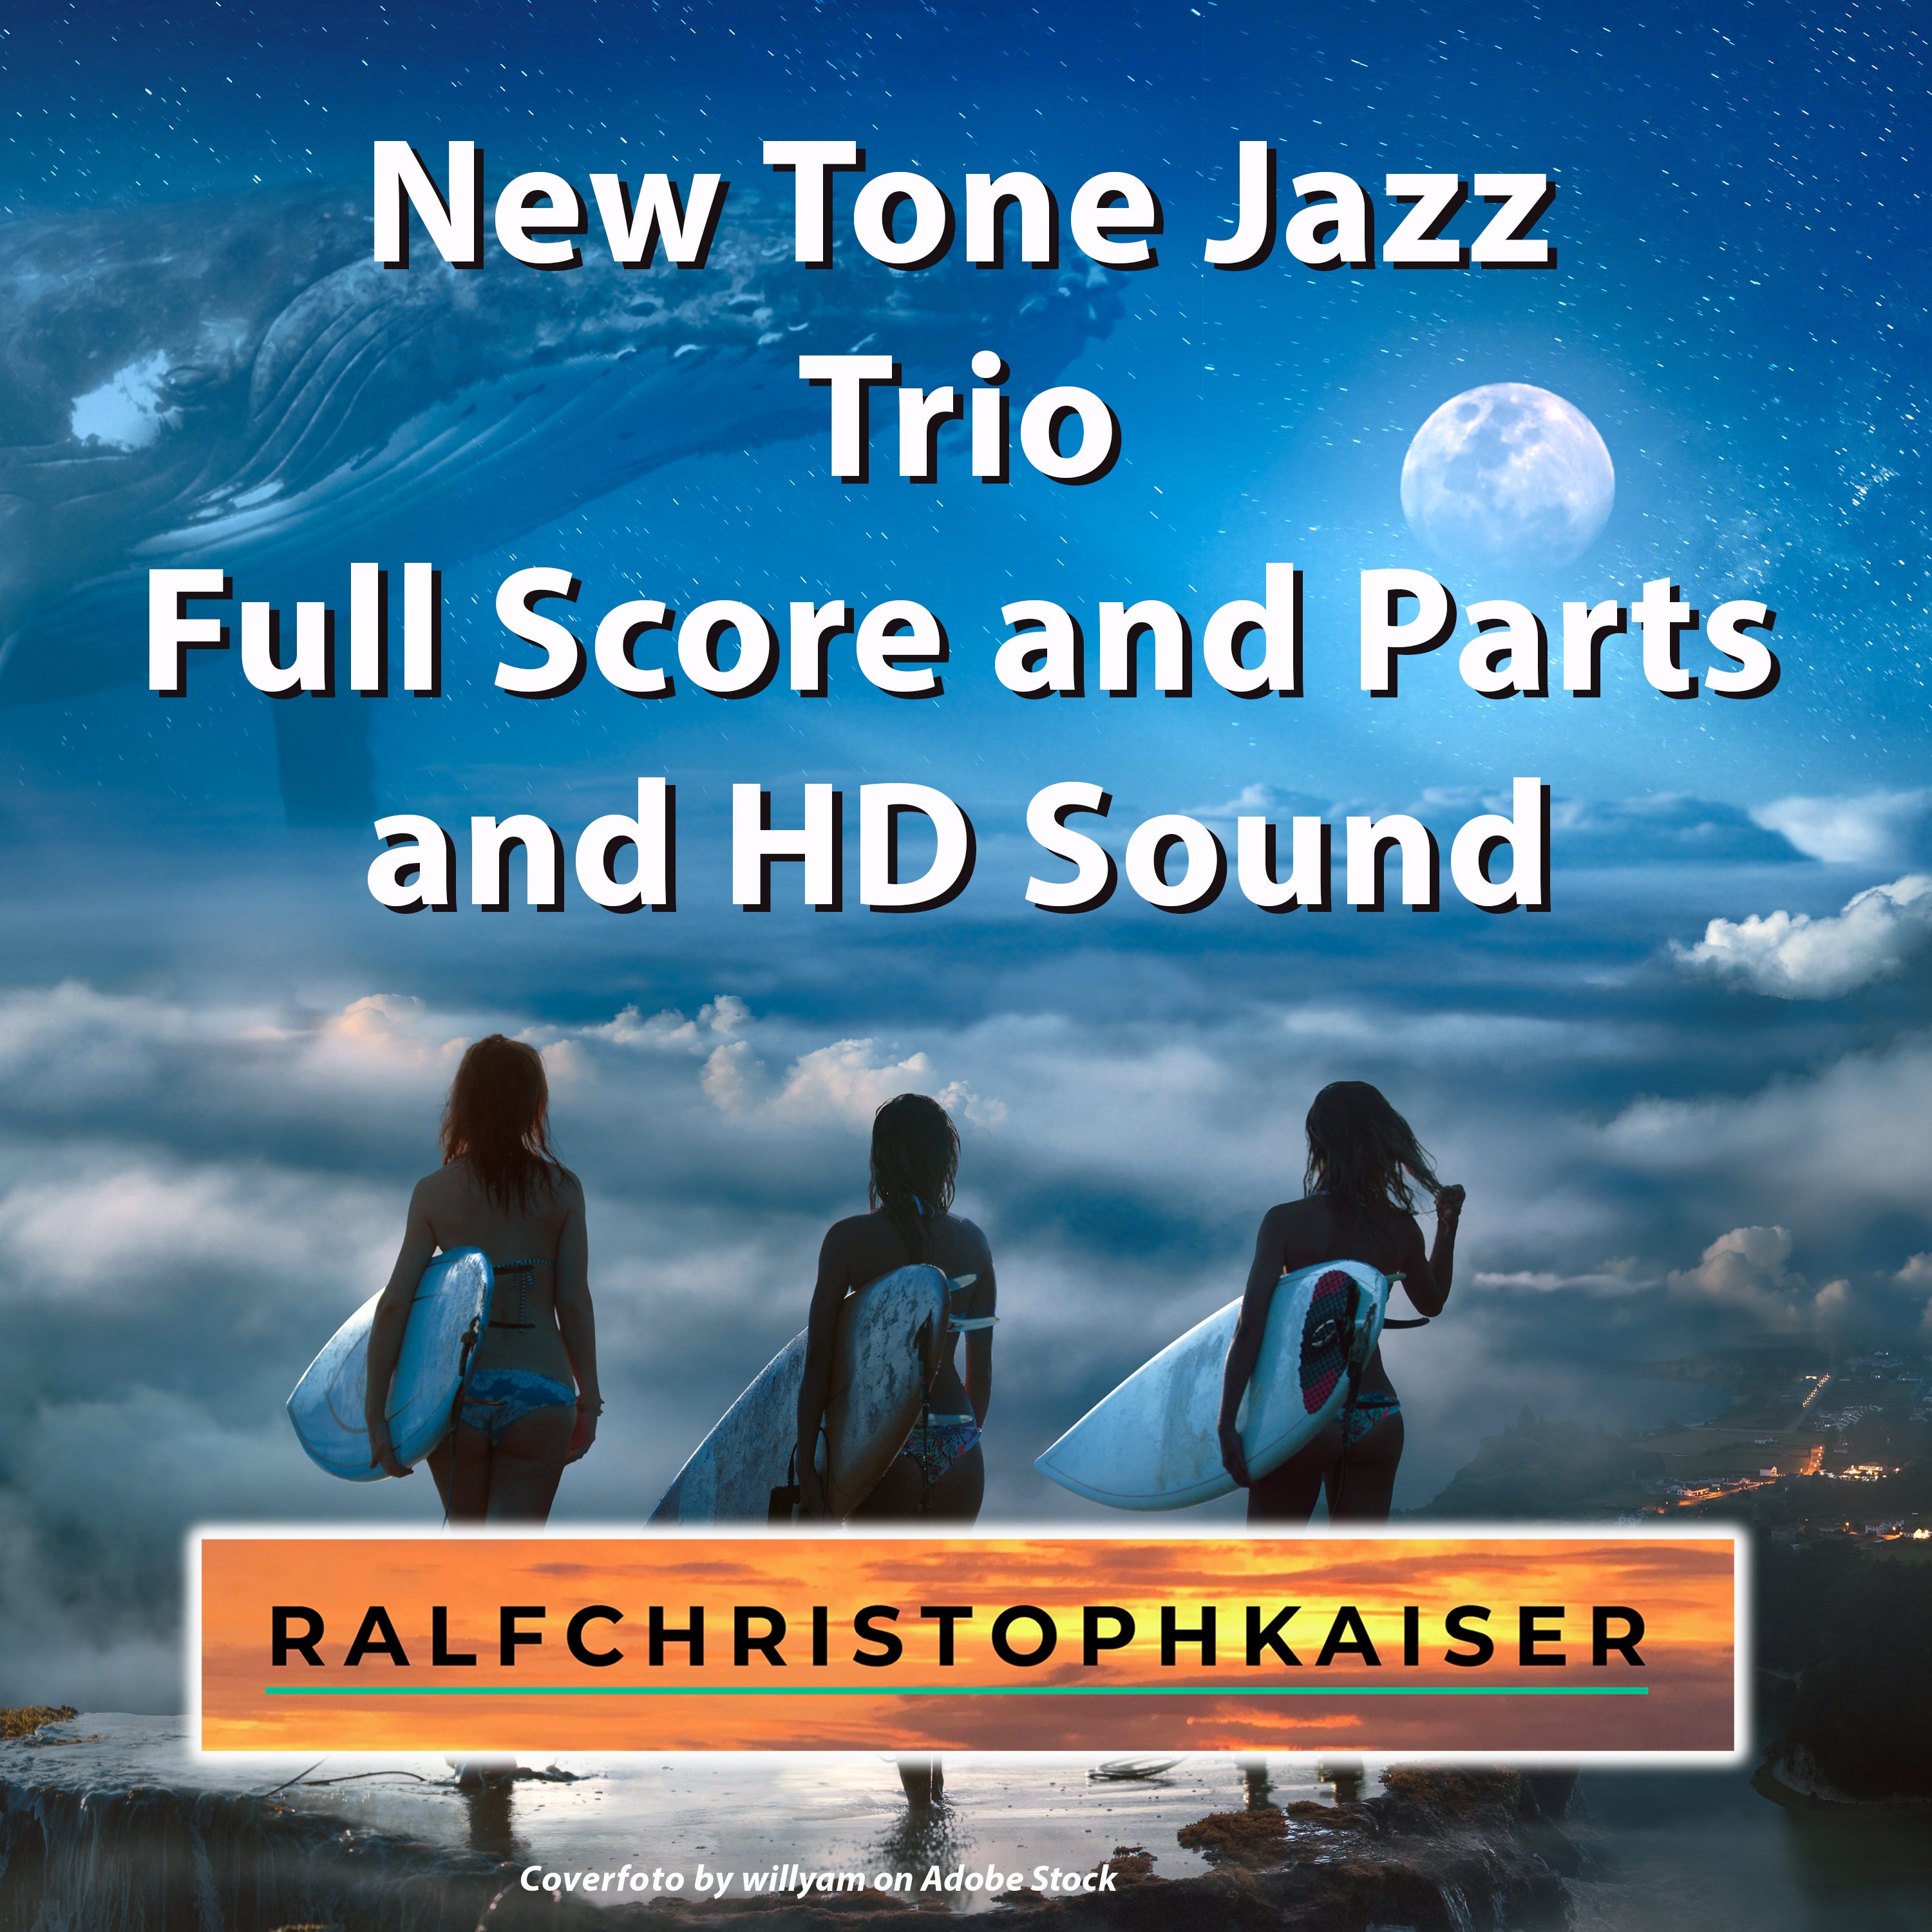 New Tone Jazz Trio in E-Minor für Upright Bass, Querflöte und Trompete by Ralf Christoph Kaiser Full Score and Parts and HD Sound Wav File - ralfchristophkaiser.com Musik und Noten